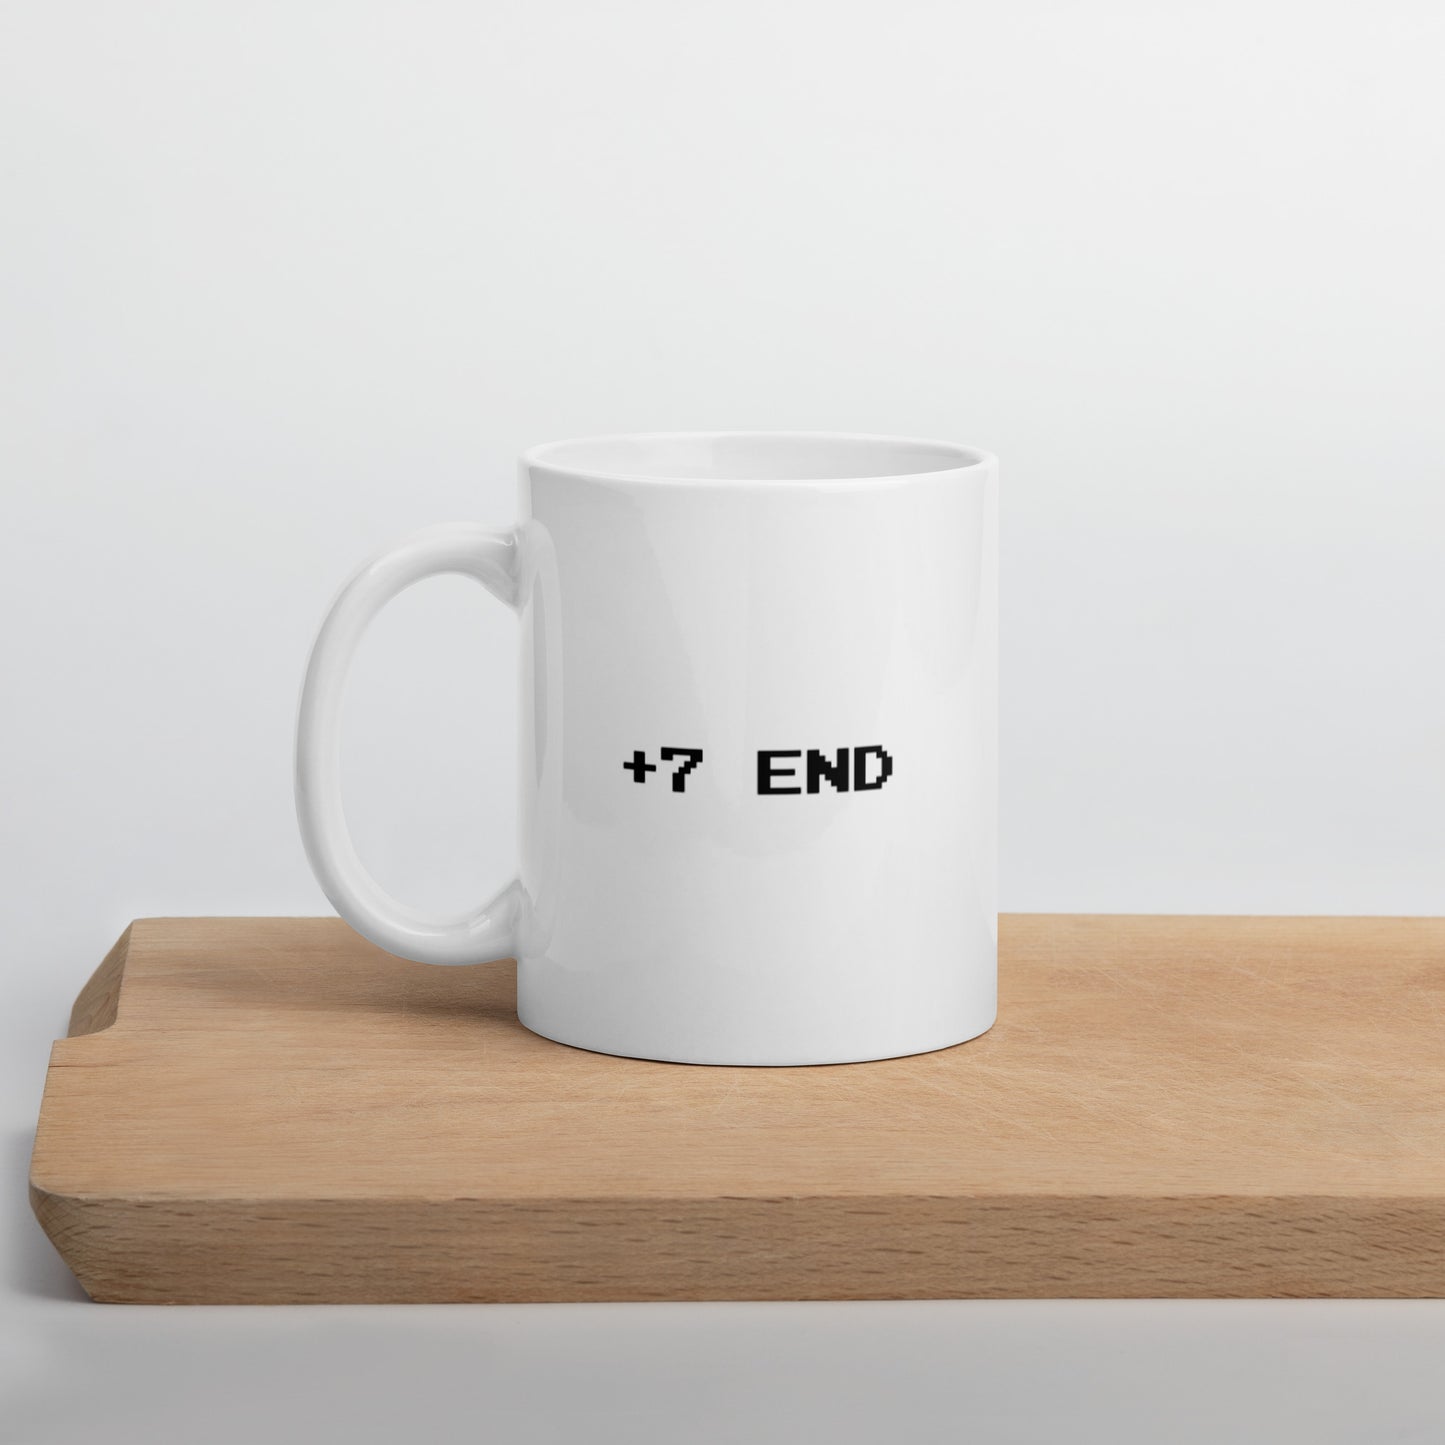 +7 END - Mug